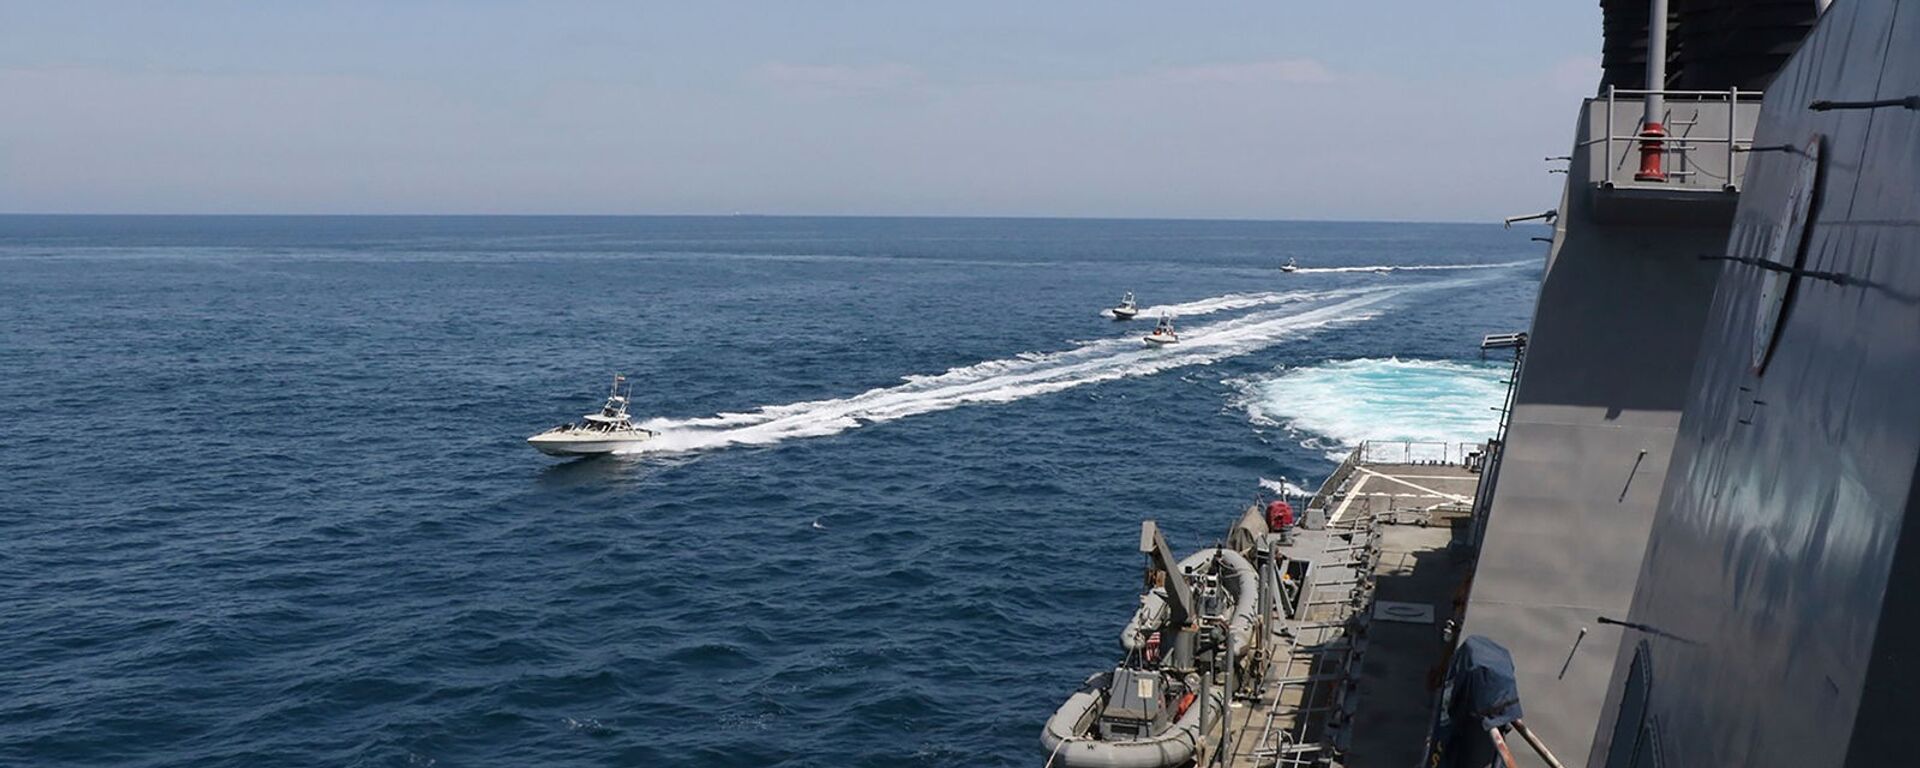 Иранские корабли Революционной гвардии плывут рядом с американскими военными кораблями в Персидском заливе близ Кувейта (15 апреля 2020). Персидский залив - Sputnik Армения, 1920, 02.06.2021